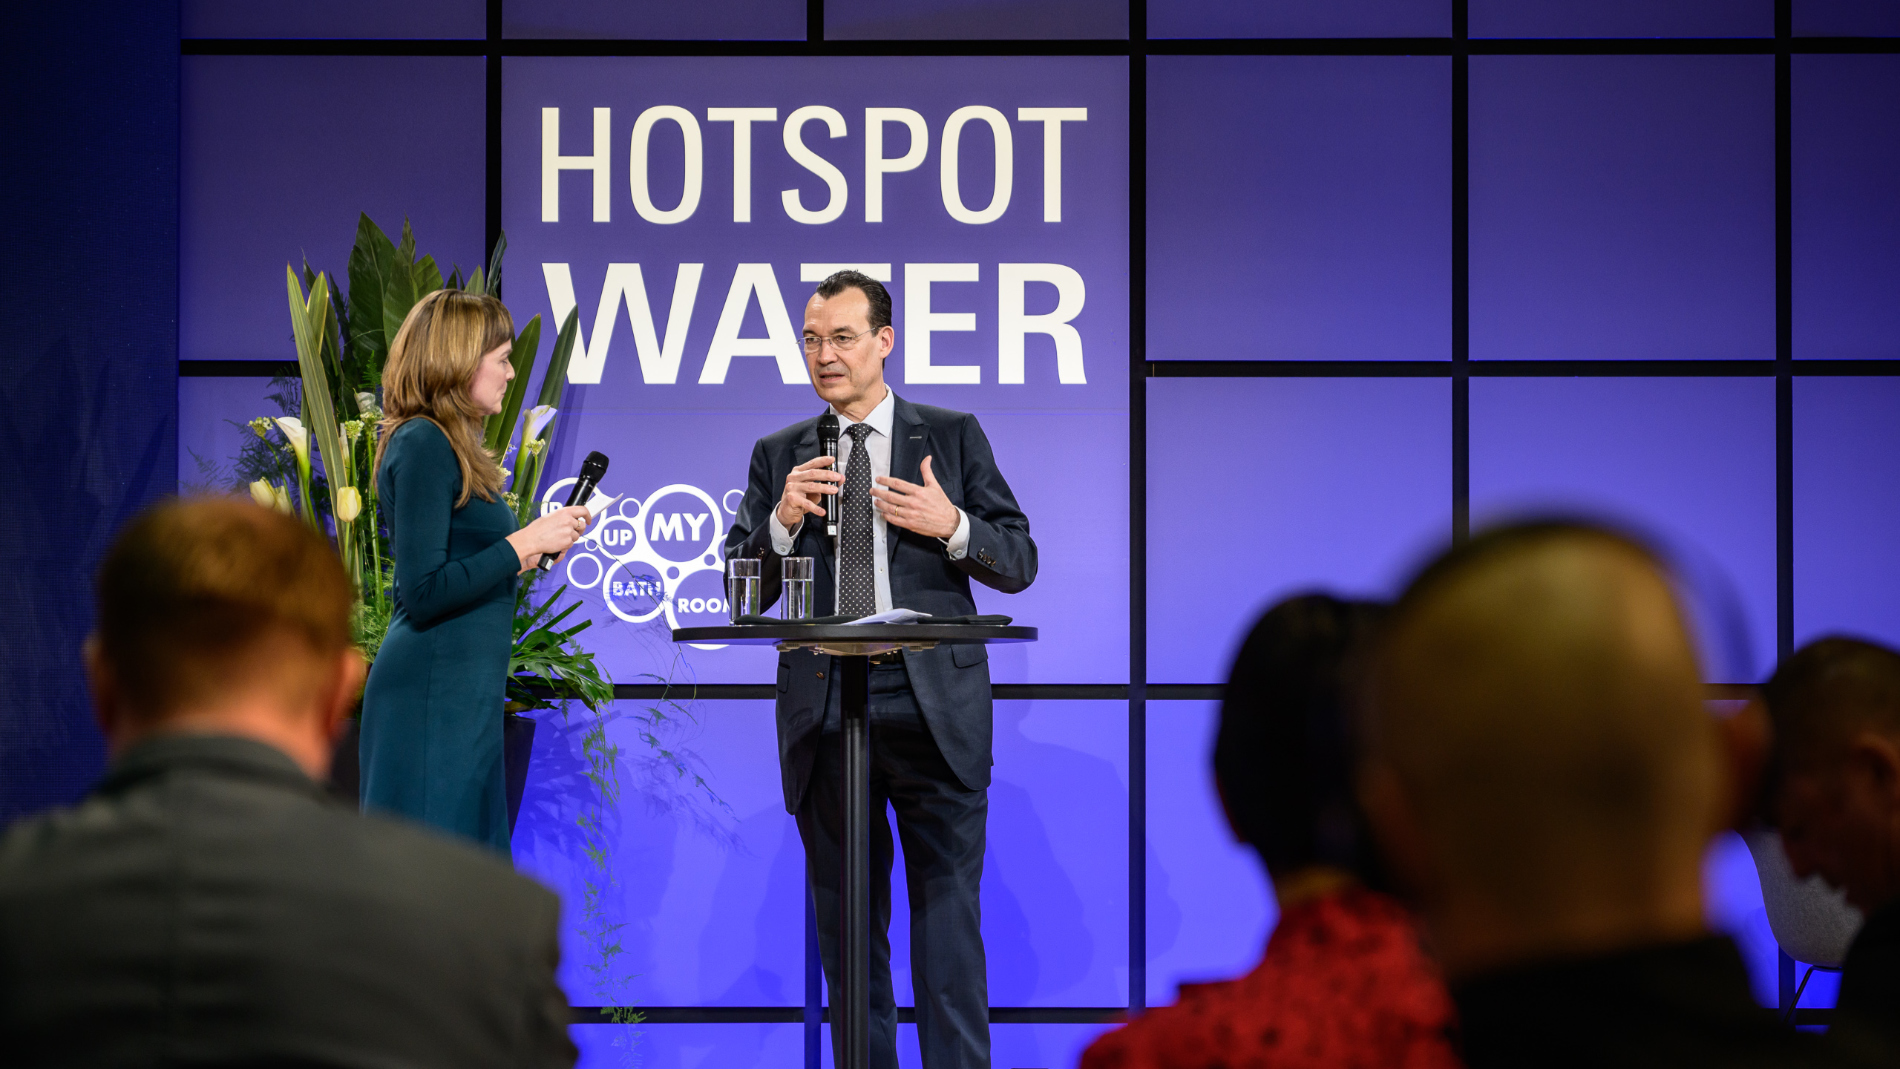 Vortrag beim Hotspot Water